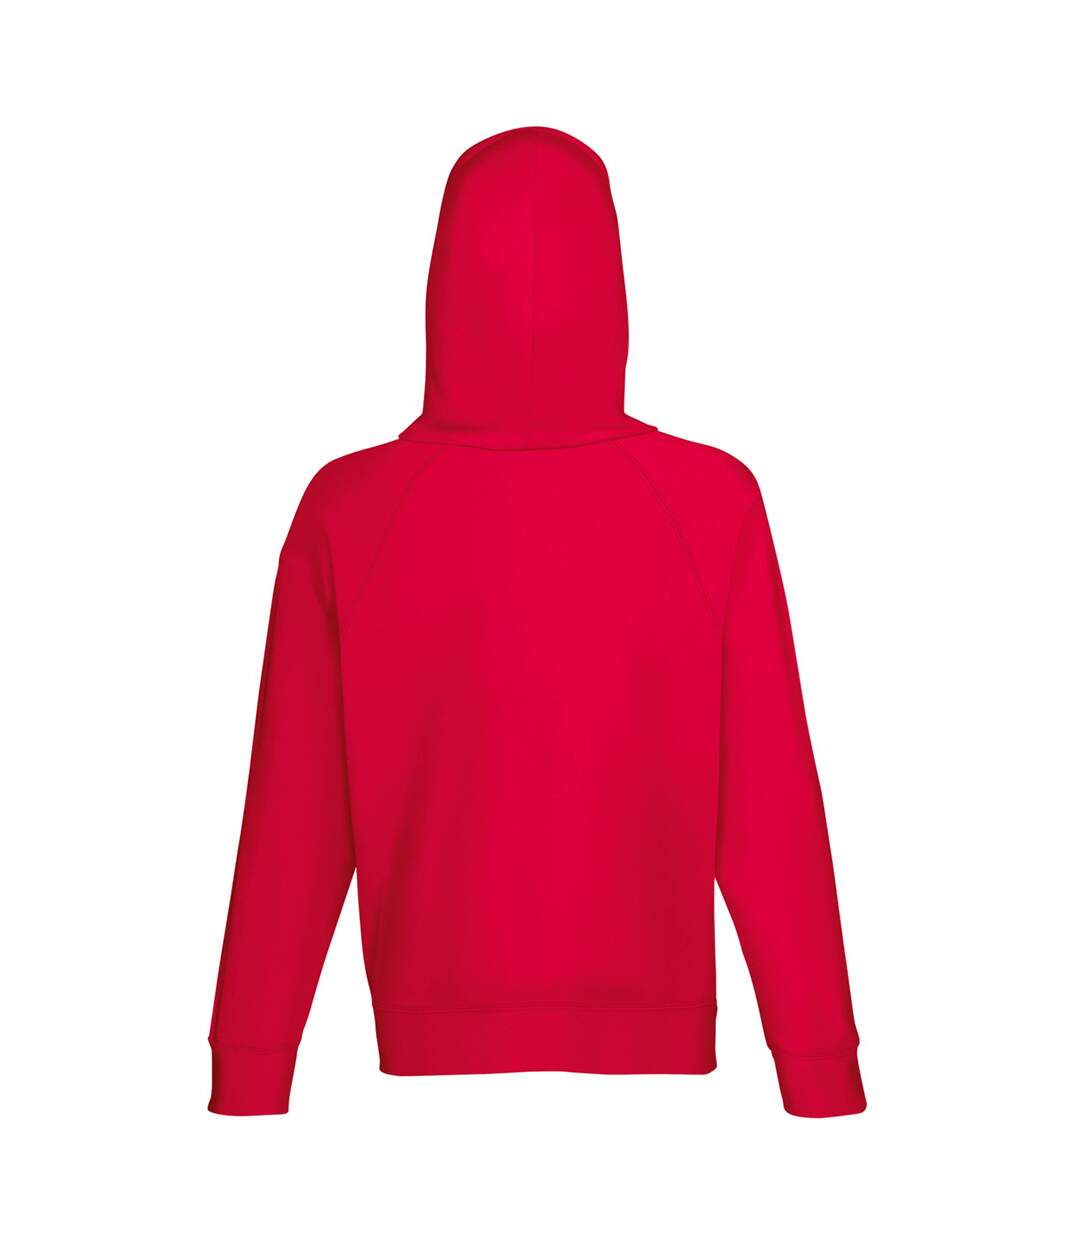 Fruit Of The Loom Mens Lightweight Hooded Sweatshirt / Hoodie (240 GSM) (Red)